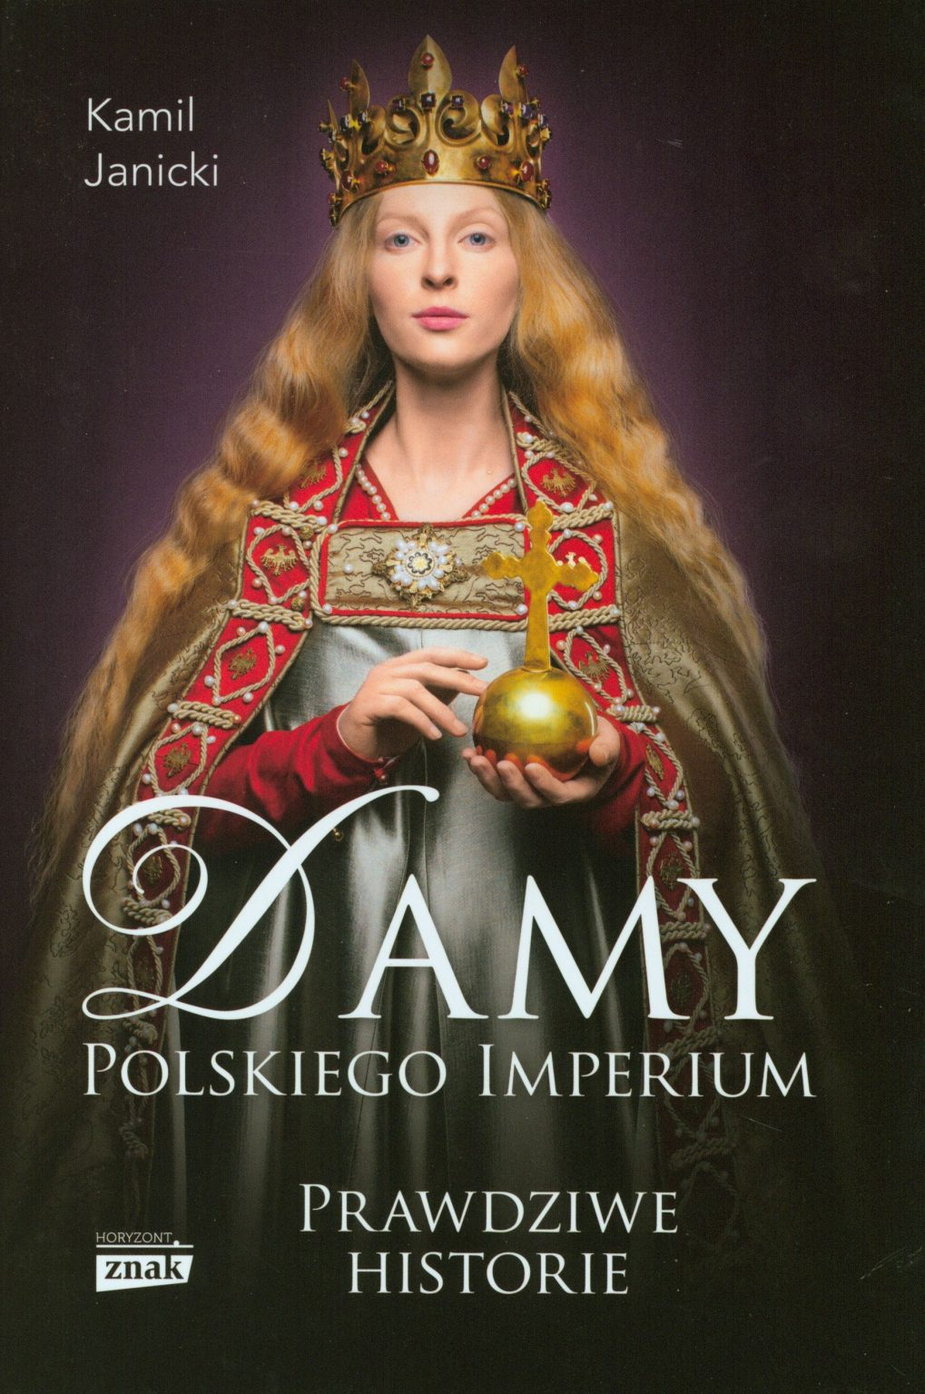 Artykuł stanowi fragment książki Kamila Janickiego pt Damy polskiego imperium (Znak Horyzont 2017).